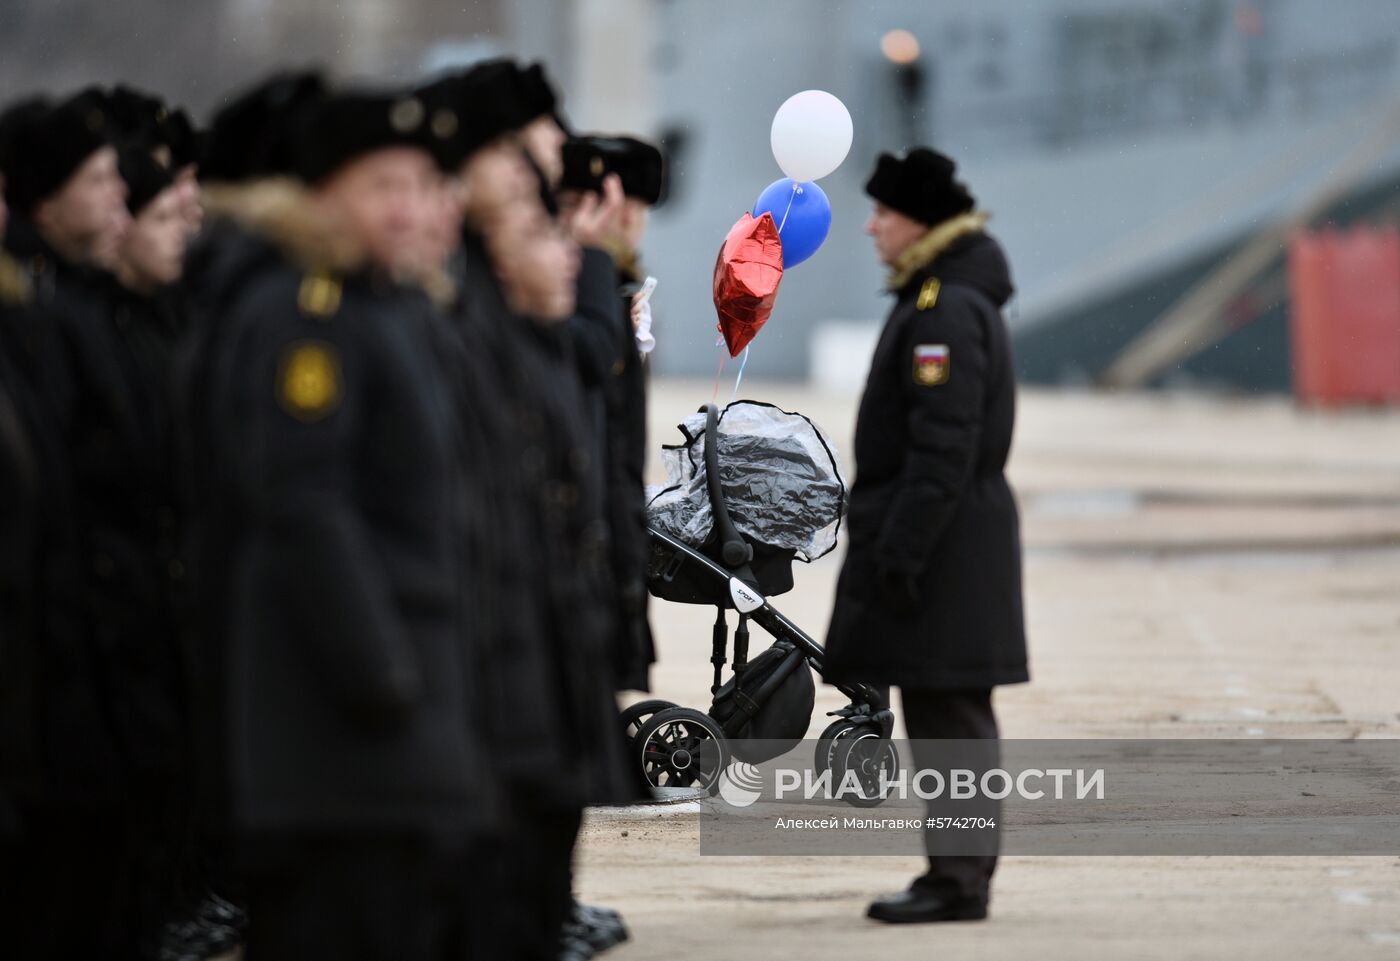 Возвращение фрегата "Адмирал Эссен" в Севастополь